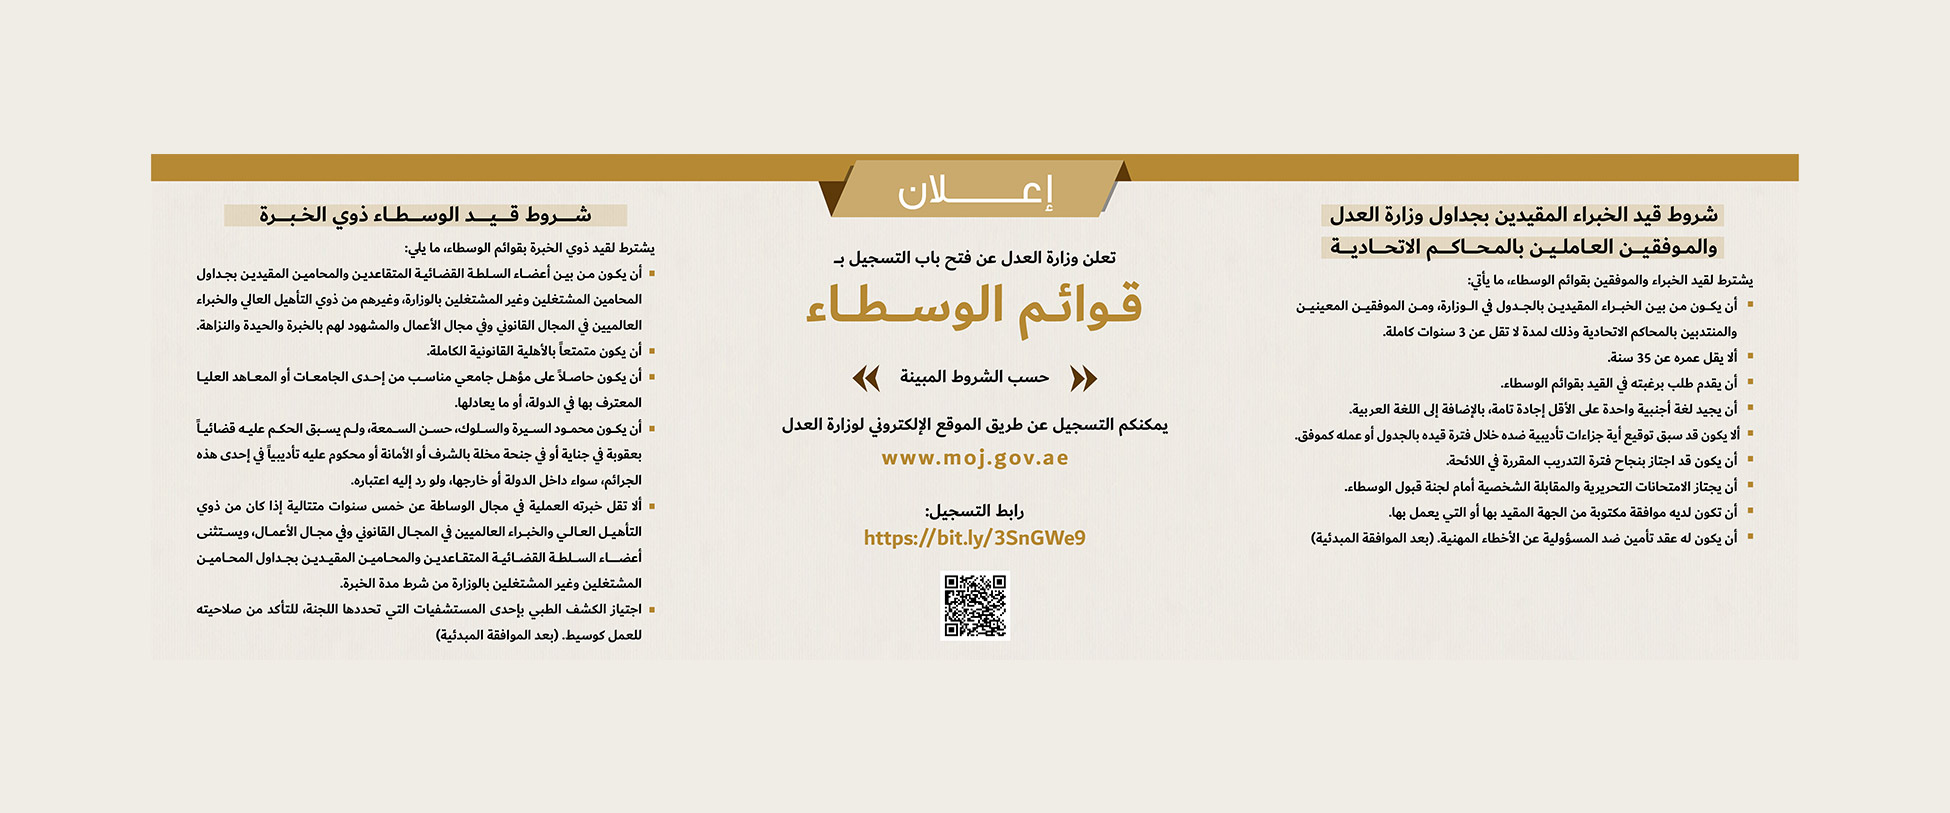 الصفحة الرئيسية - وزارة العدل - الإمارات العربية المتحدة